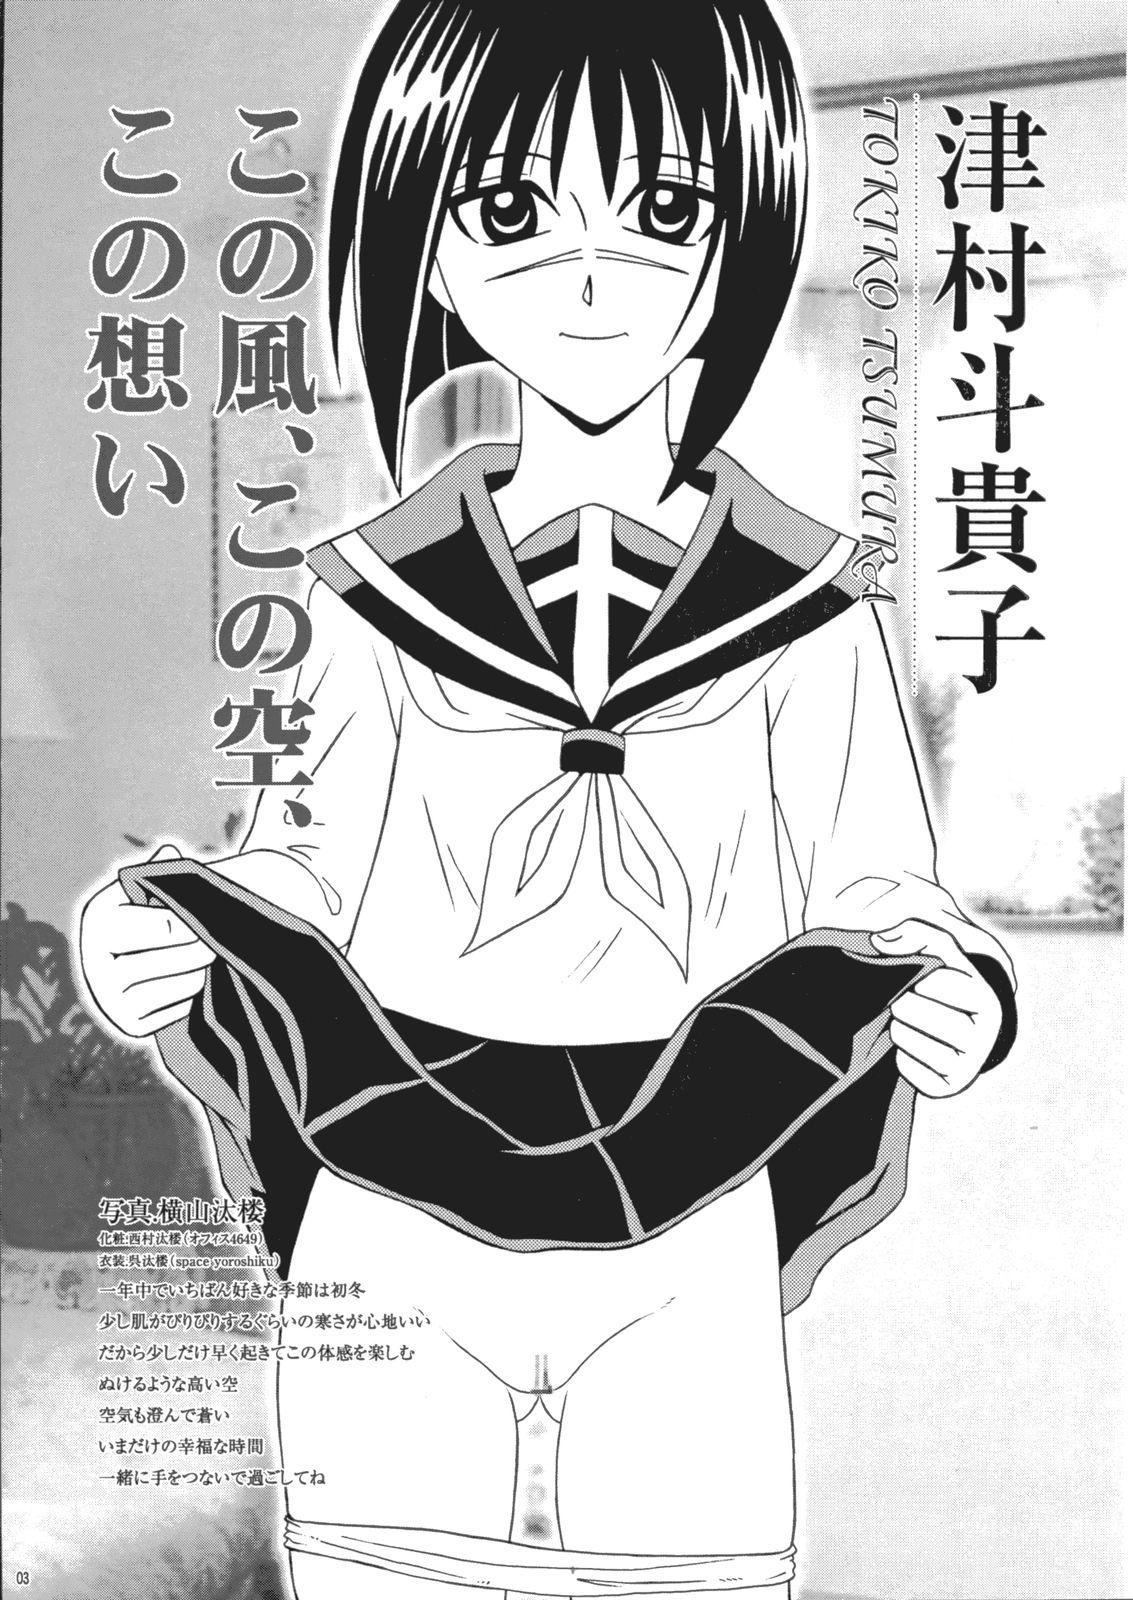 Exotic Saku-chan Kurabu Vol.03 - Naruto One piece Ichigo 100 Is Hikaru no go Butt Plug - Page 2